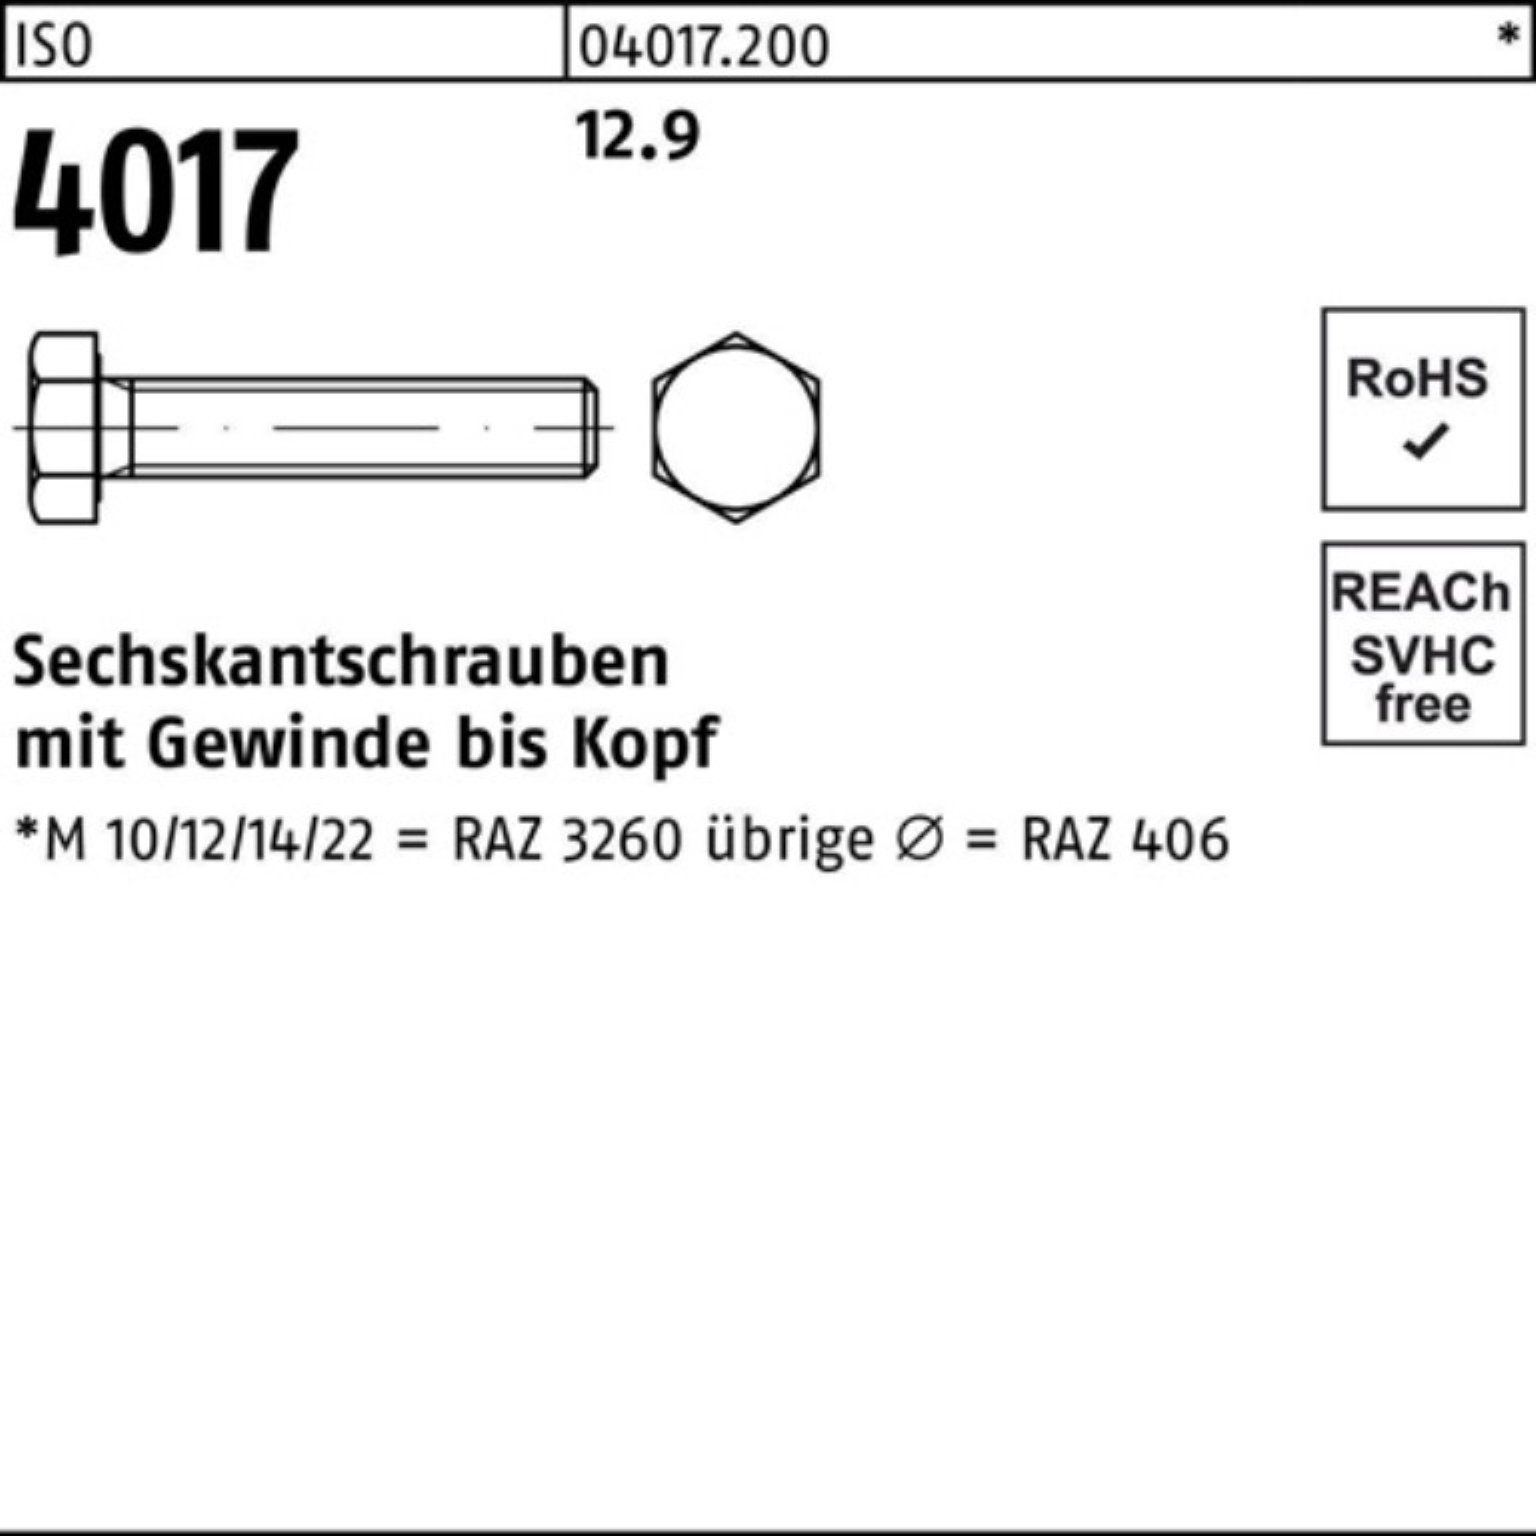 Bufab Sechskantschraube 200er Pack ISO Sechskantschraube ISO 12.9 M8x VG 4017 Stück 200 40 25